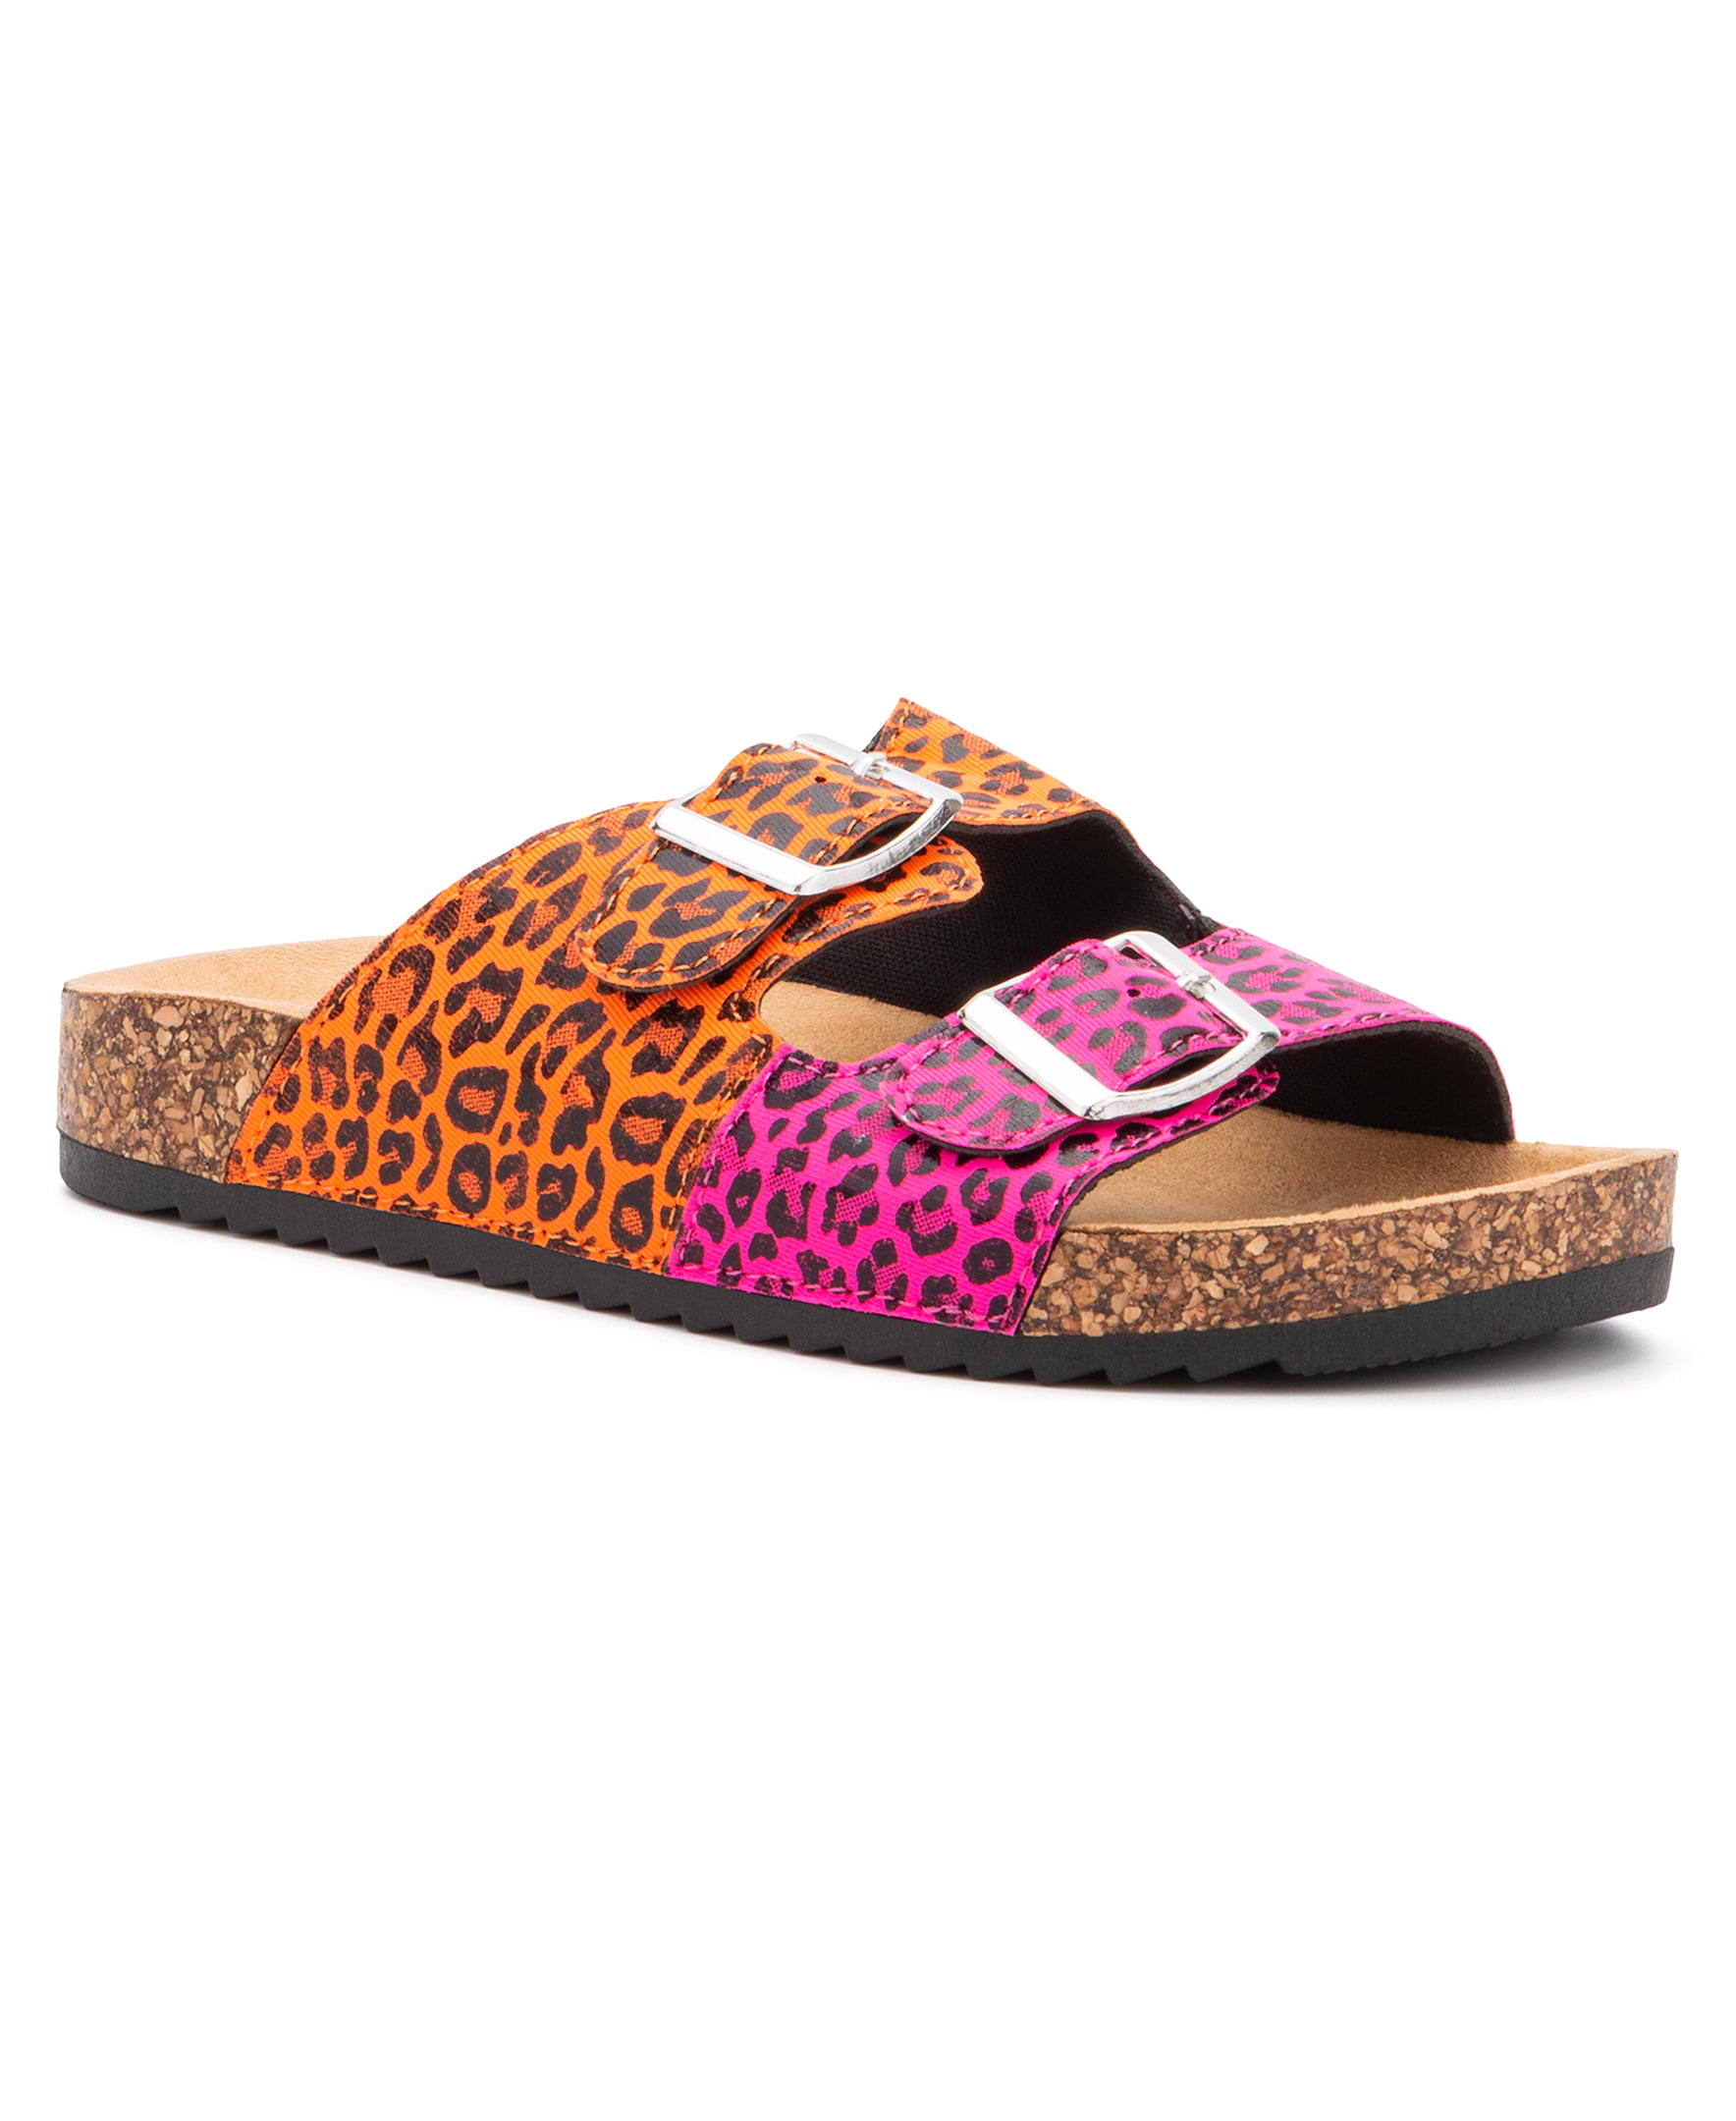 Olivia Girls Twin Leopard Sandals Walmart.com